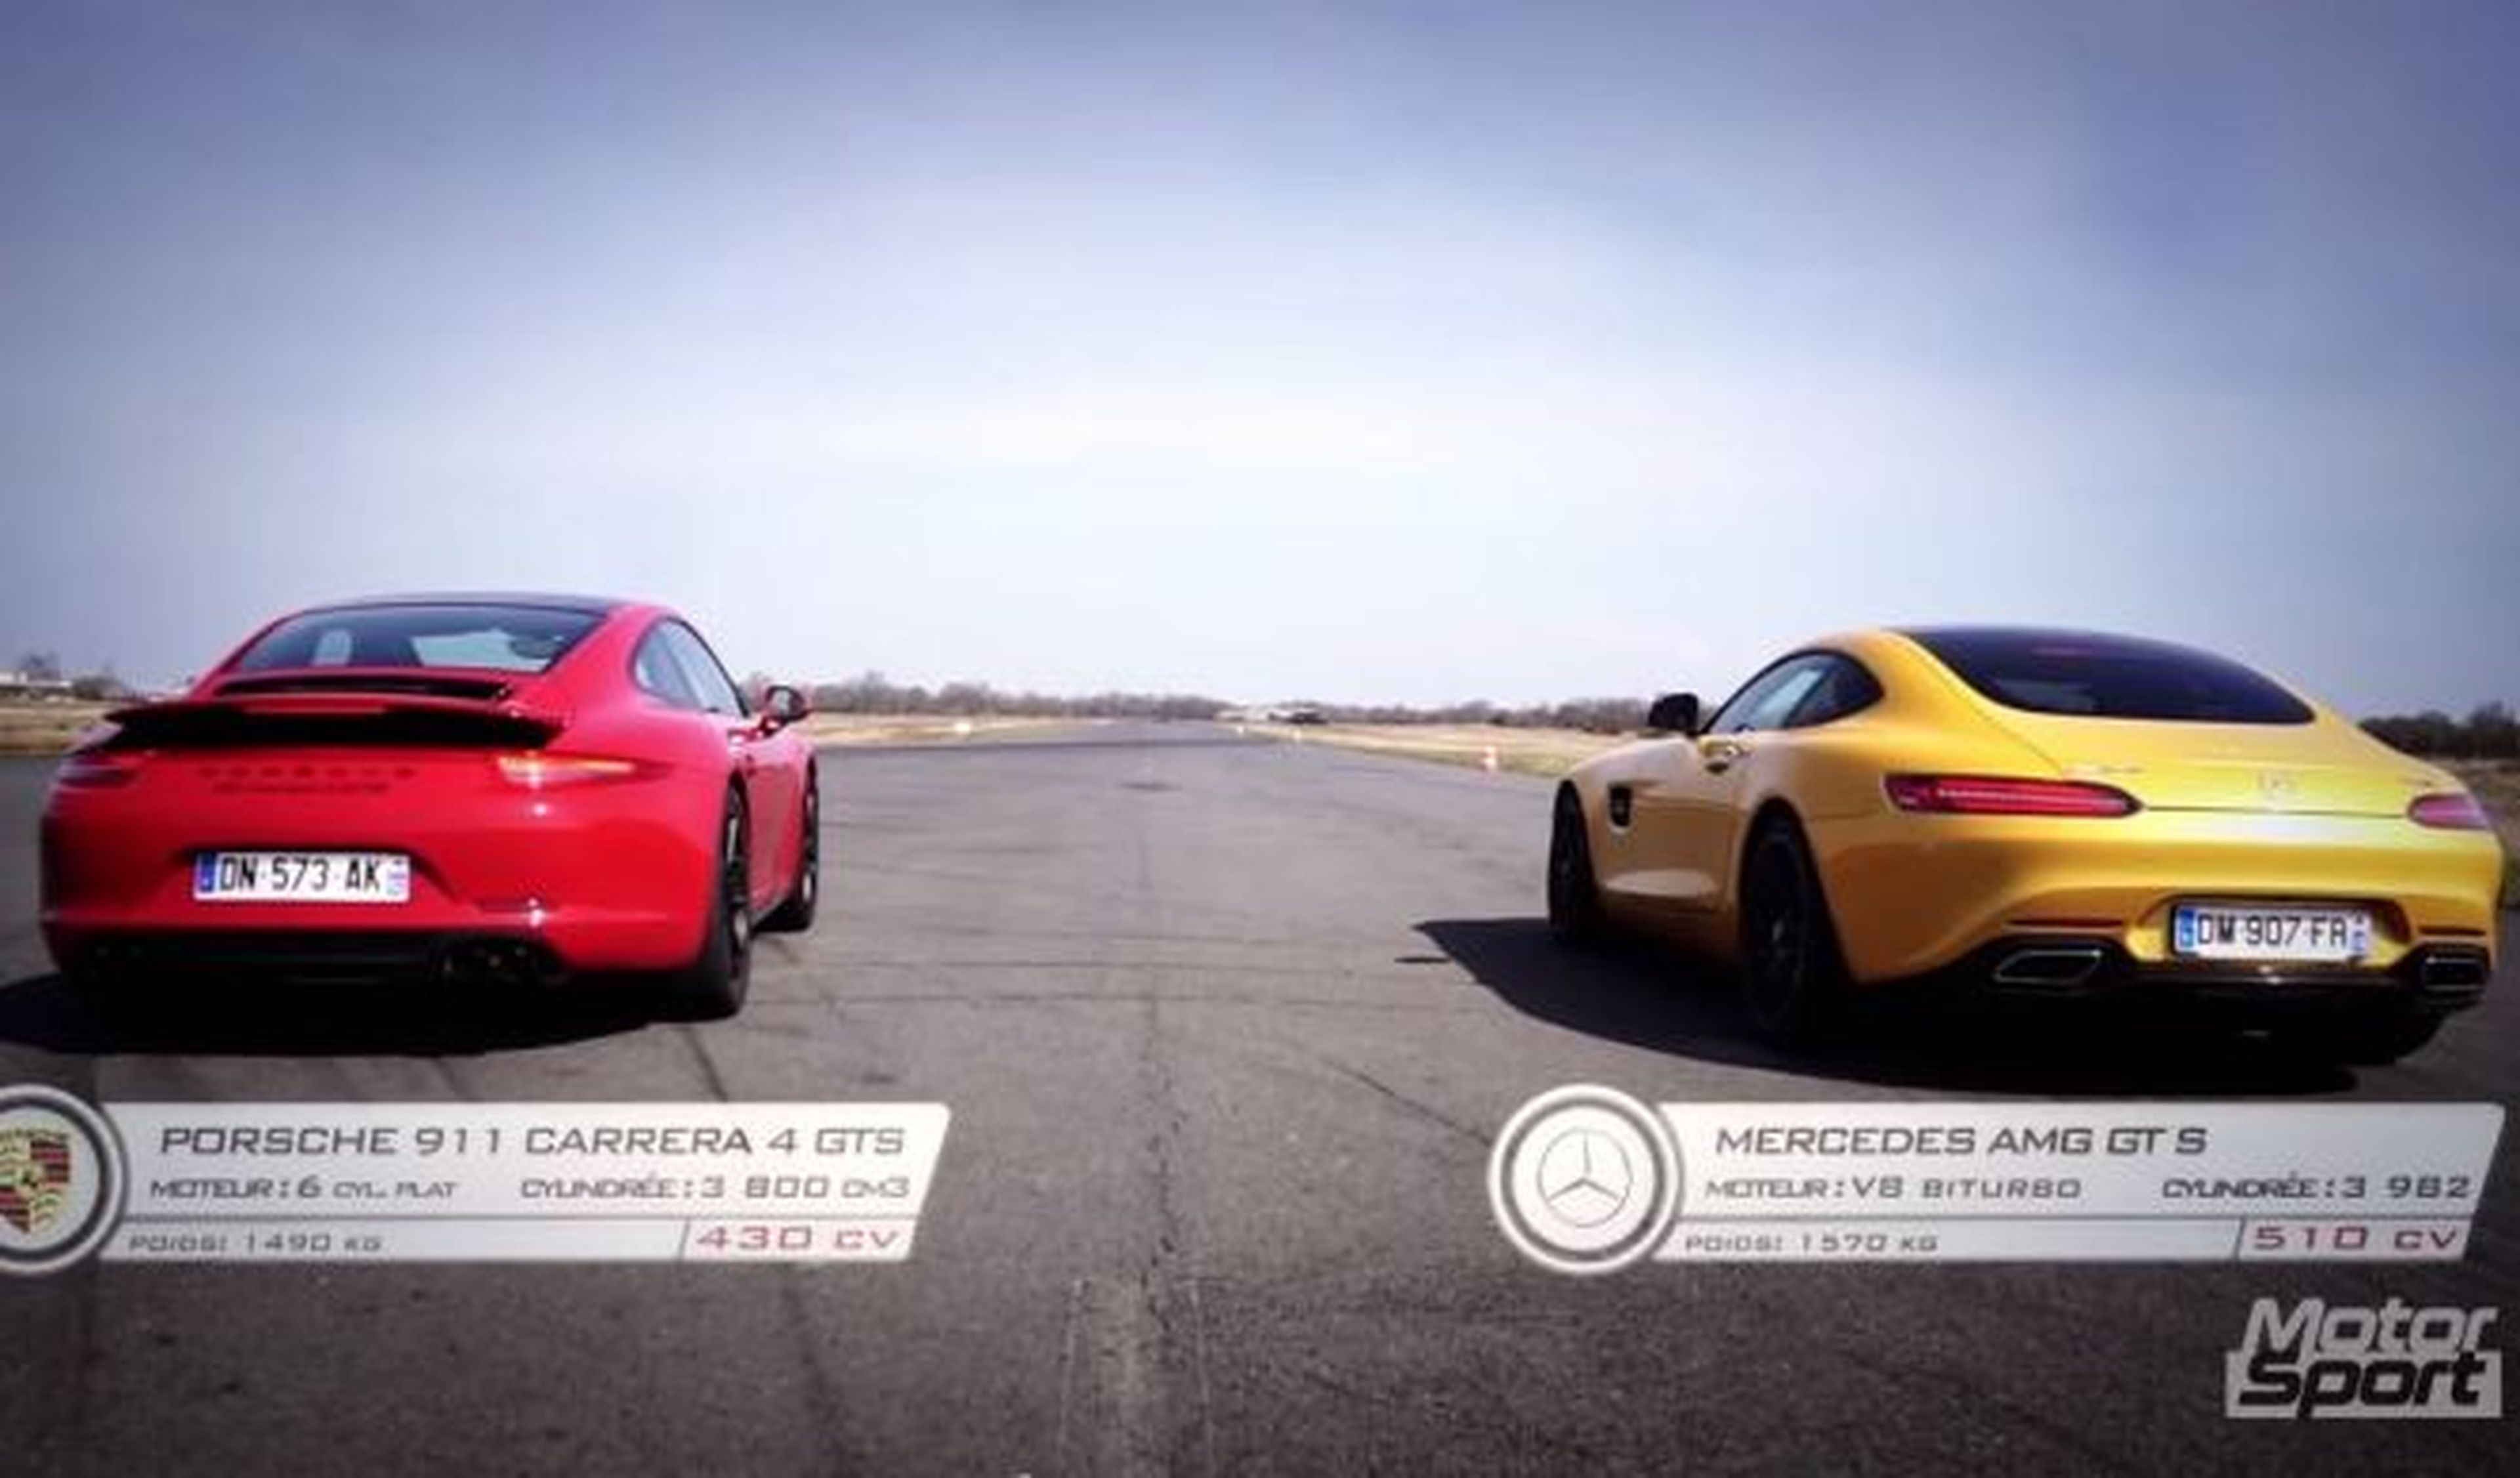 Prueba de aceleración: Mercedes-AMG GT S vs Porsche 911 G